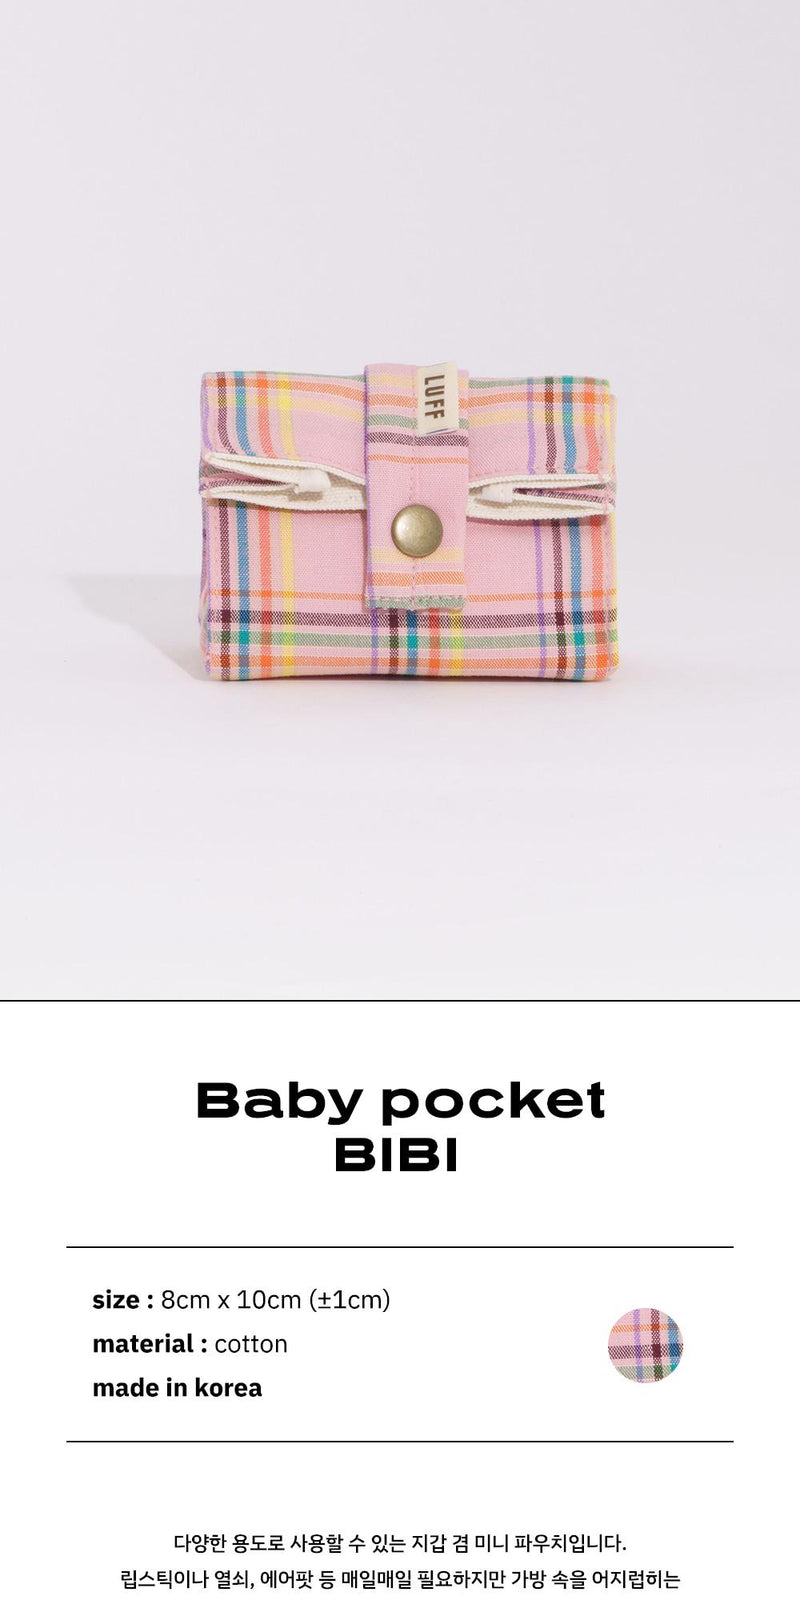 baby pocket - bibi